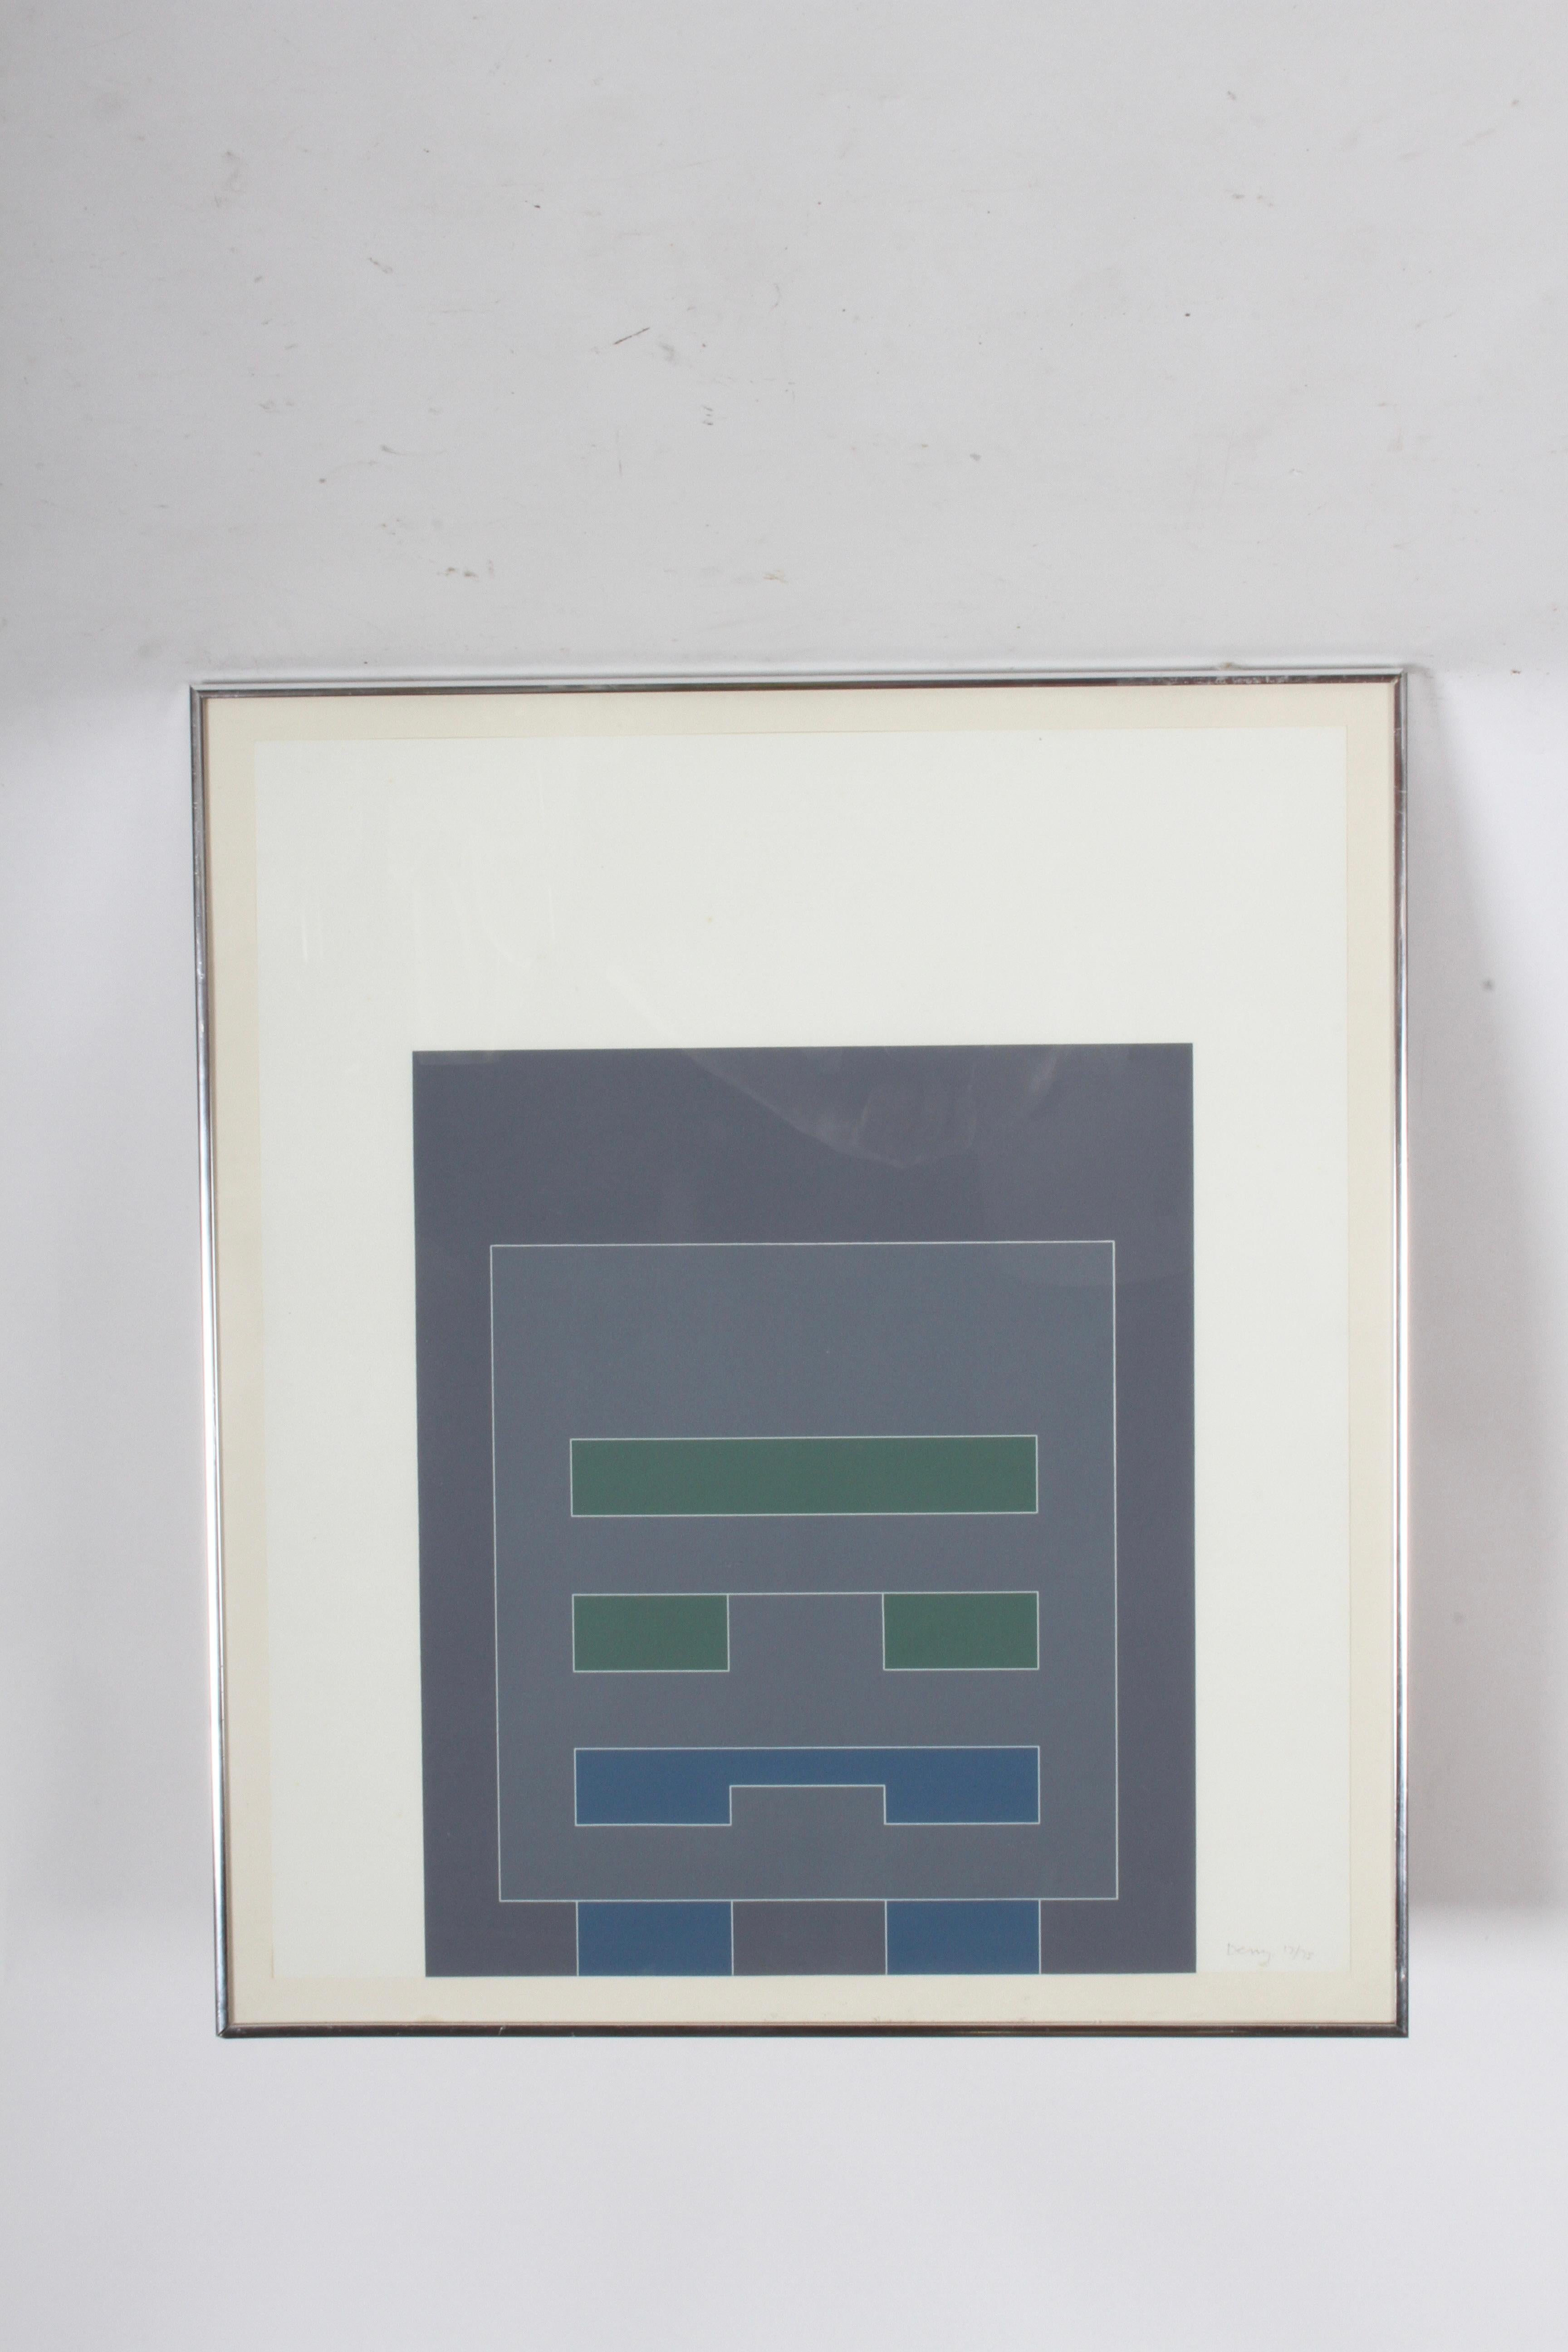 Metal Robyn Denny (1930-2014) British UNTITLED II & IV Frame Prints - Waddington Suite For Sale